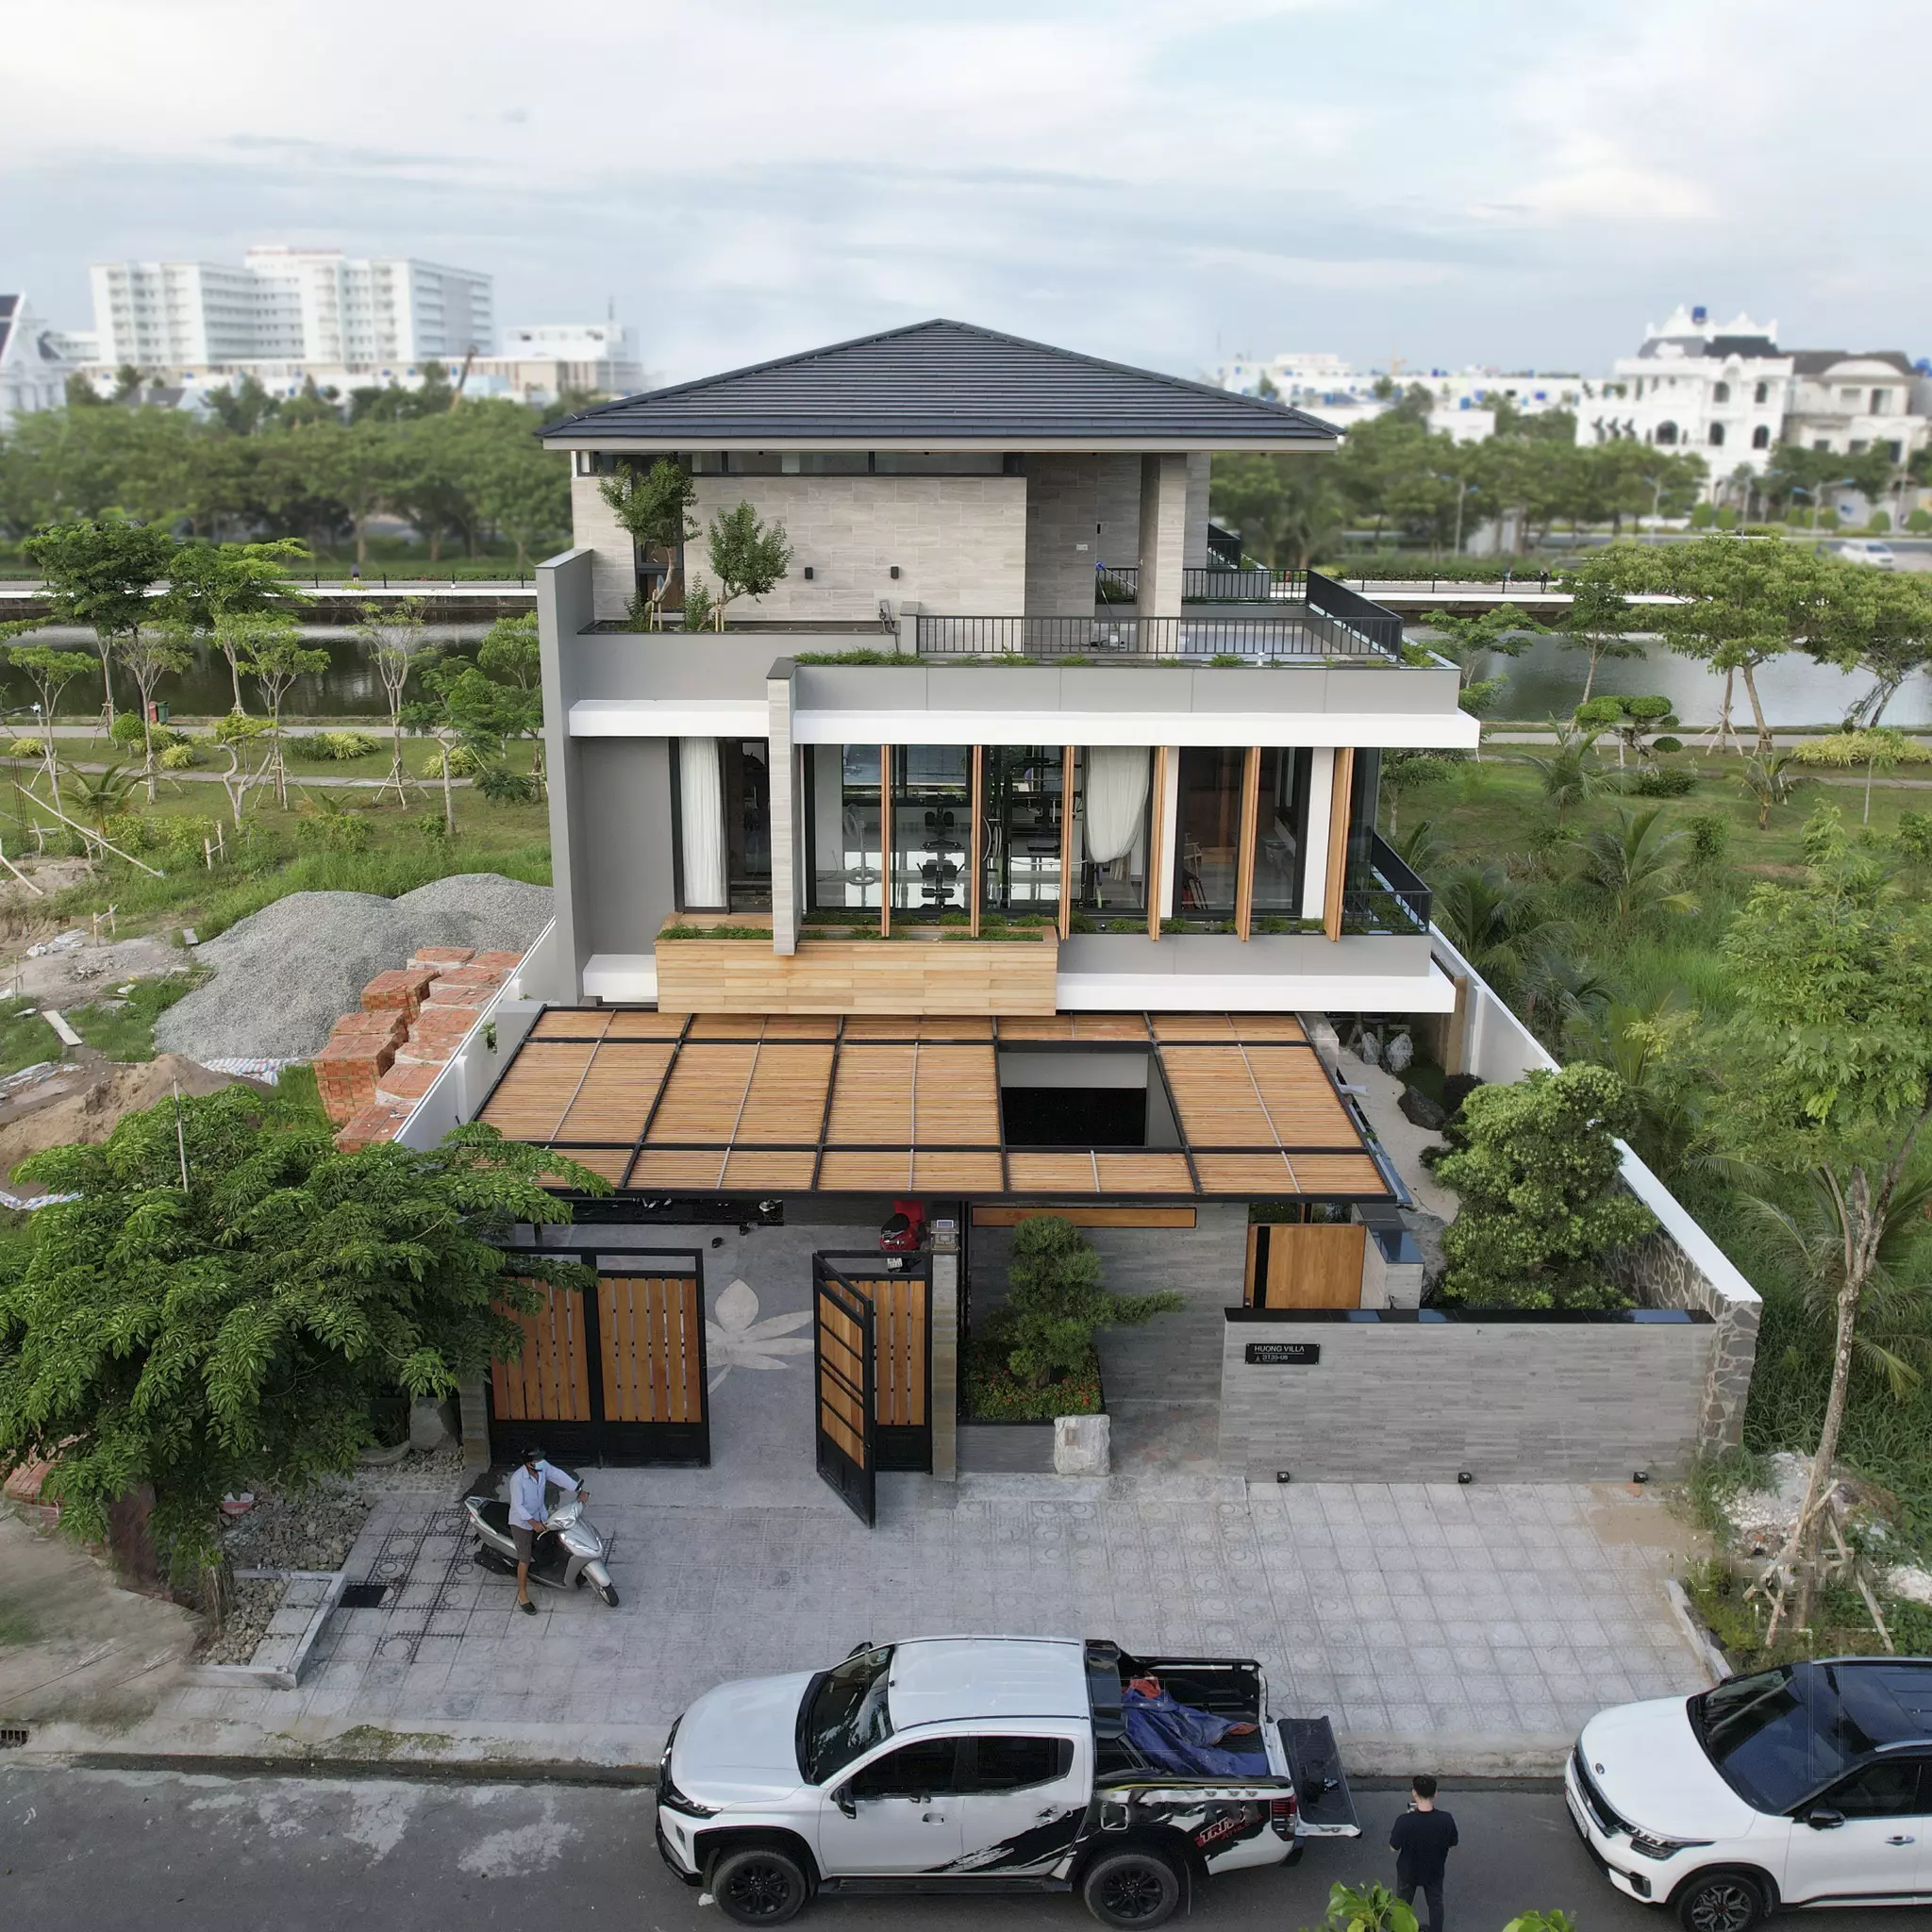 thiết kế nhà biệt thự 3 tầng phong cách tropical style